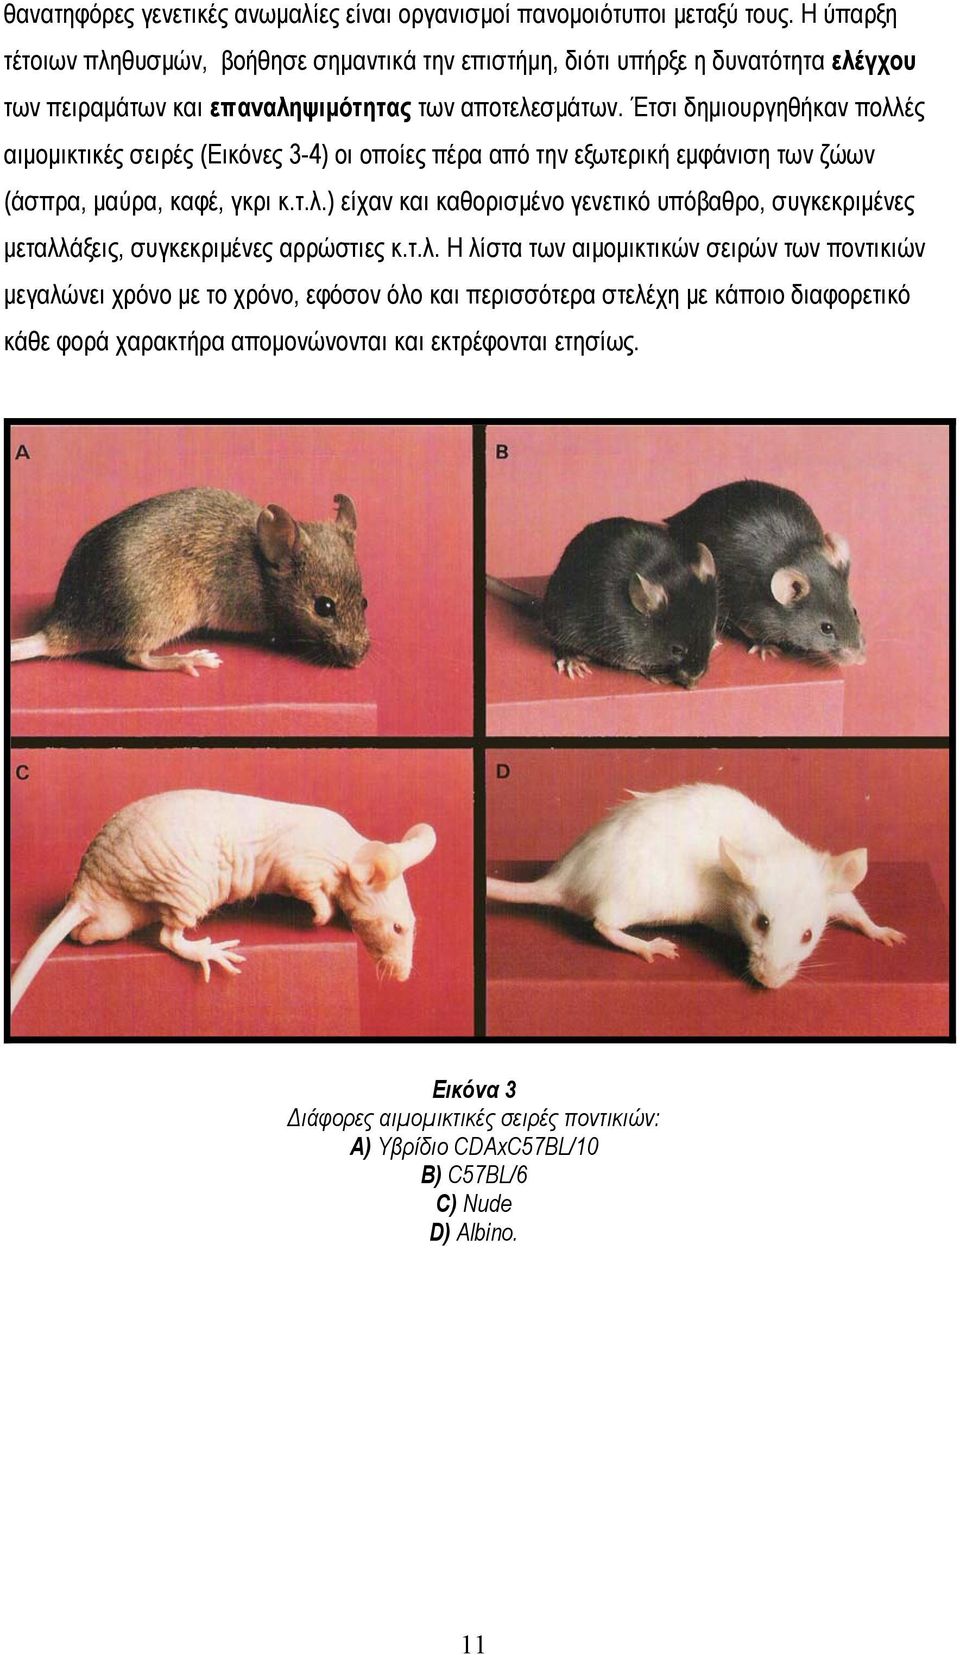 Έτσι δημιουργηθήκαν πολλές αιμομικτικές σειρές (Εικόνες 3-4) οι οποίες πέρα από την εξωτερική εμφάνιση των ζώων (άσπρα, μαύρα, καφέ, γκρι κ.τ.λ.) είχαν και καθορισμένο γενετικό υπόβαθρο, συγκεκριμένες μεταλλάξεις, συγκεκριμένες αρρώστιες κ.